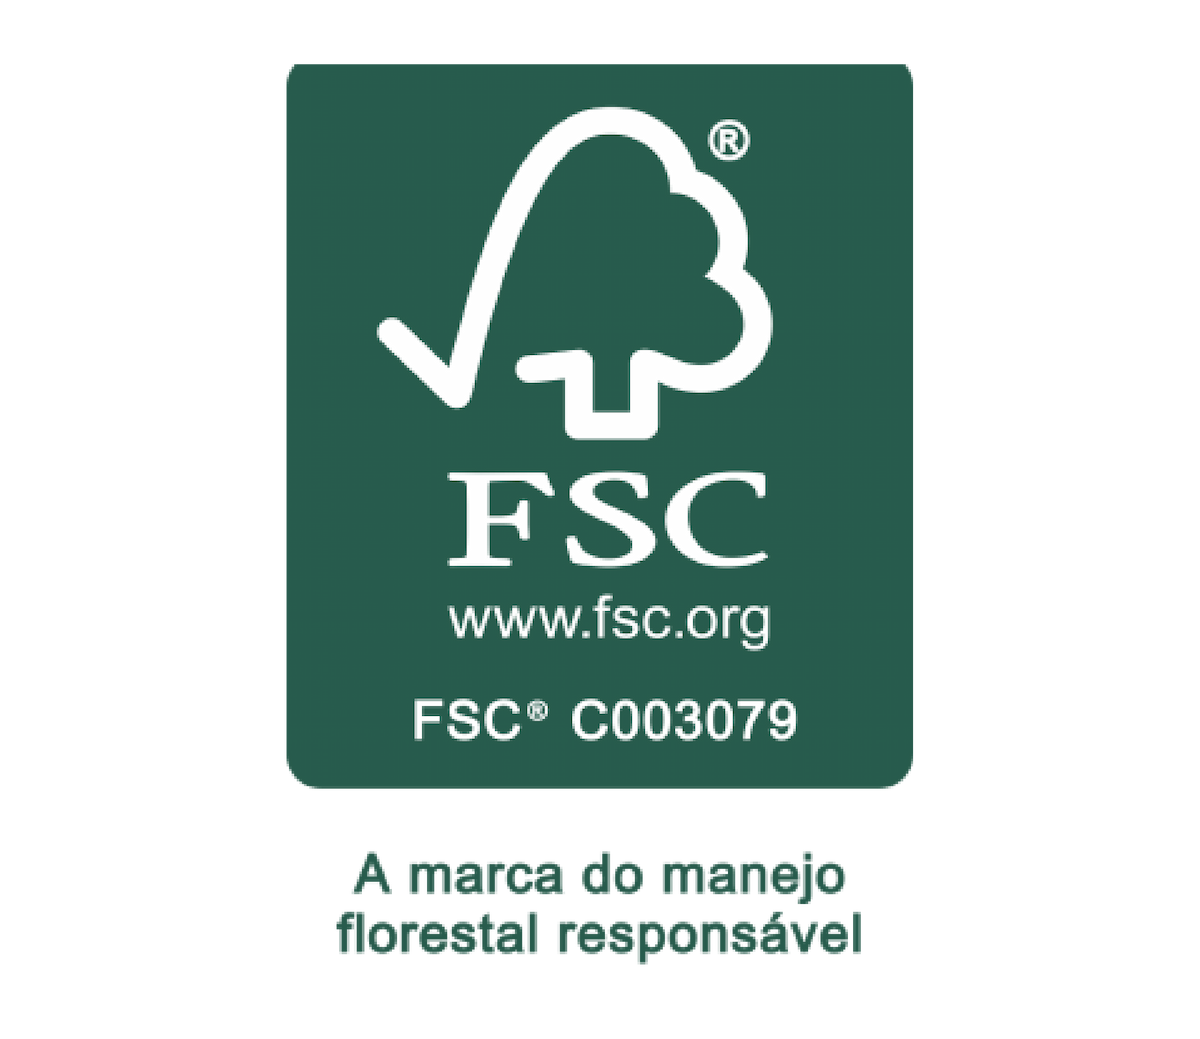 Logotipo de la certificación FSC: La marca responsable del manejo forestal.